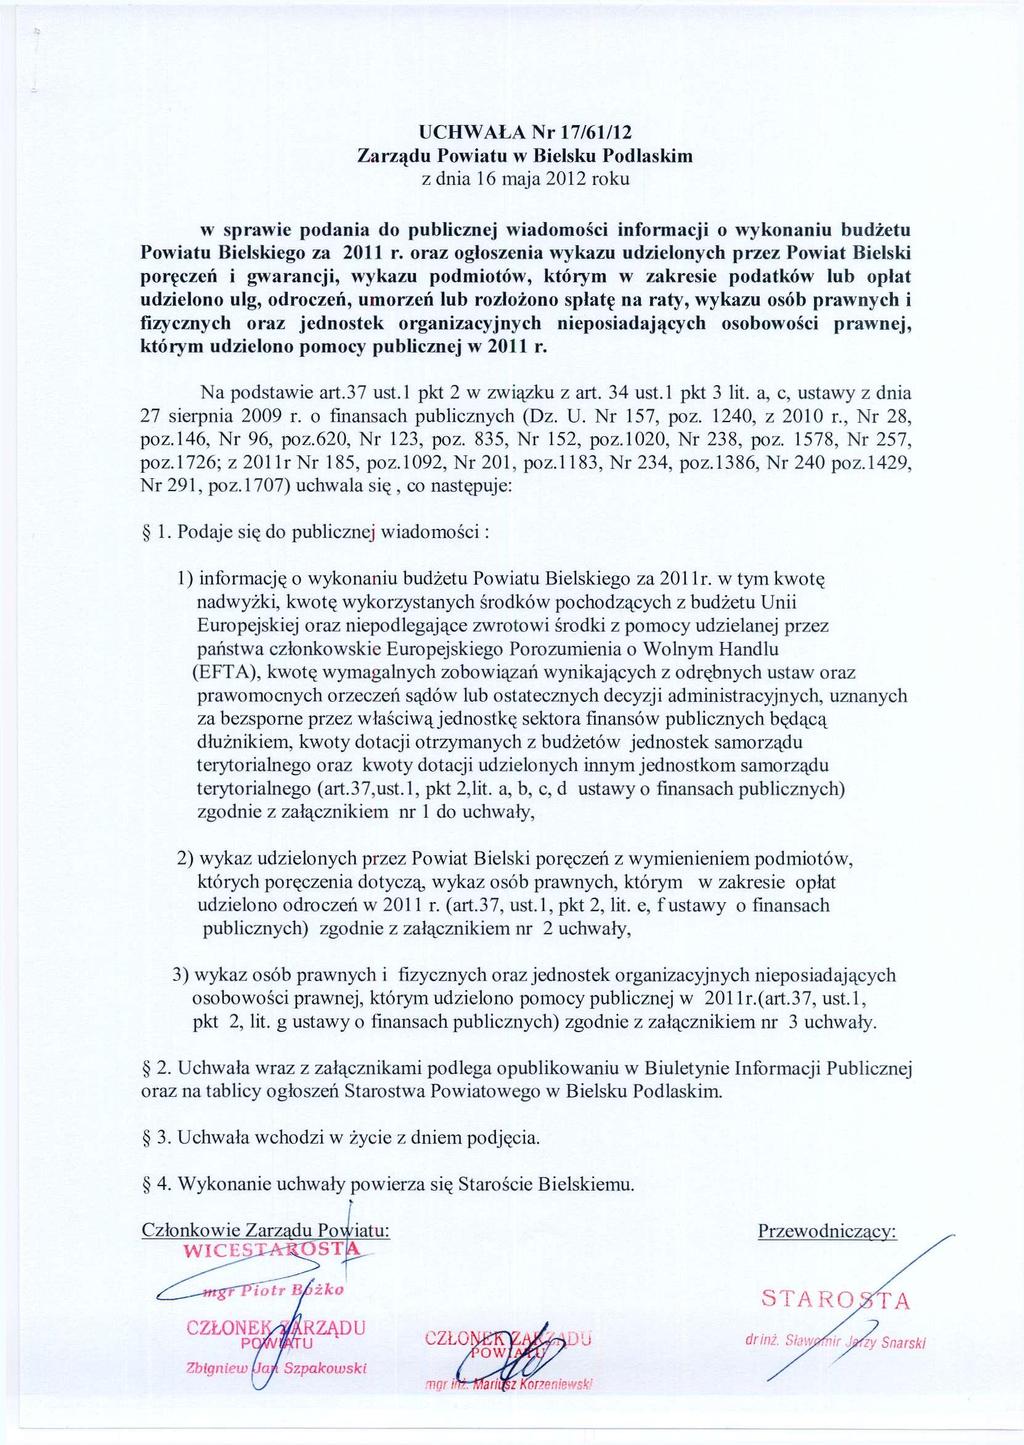 UCHWAŁA Nr 17/61/12 z dnia 16 maja 2012 roku w sprawie podania do publicznej wiadomości informacji o wykonaniu budżetu Powiatu Bielskiego za 2011 r.